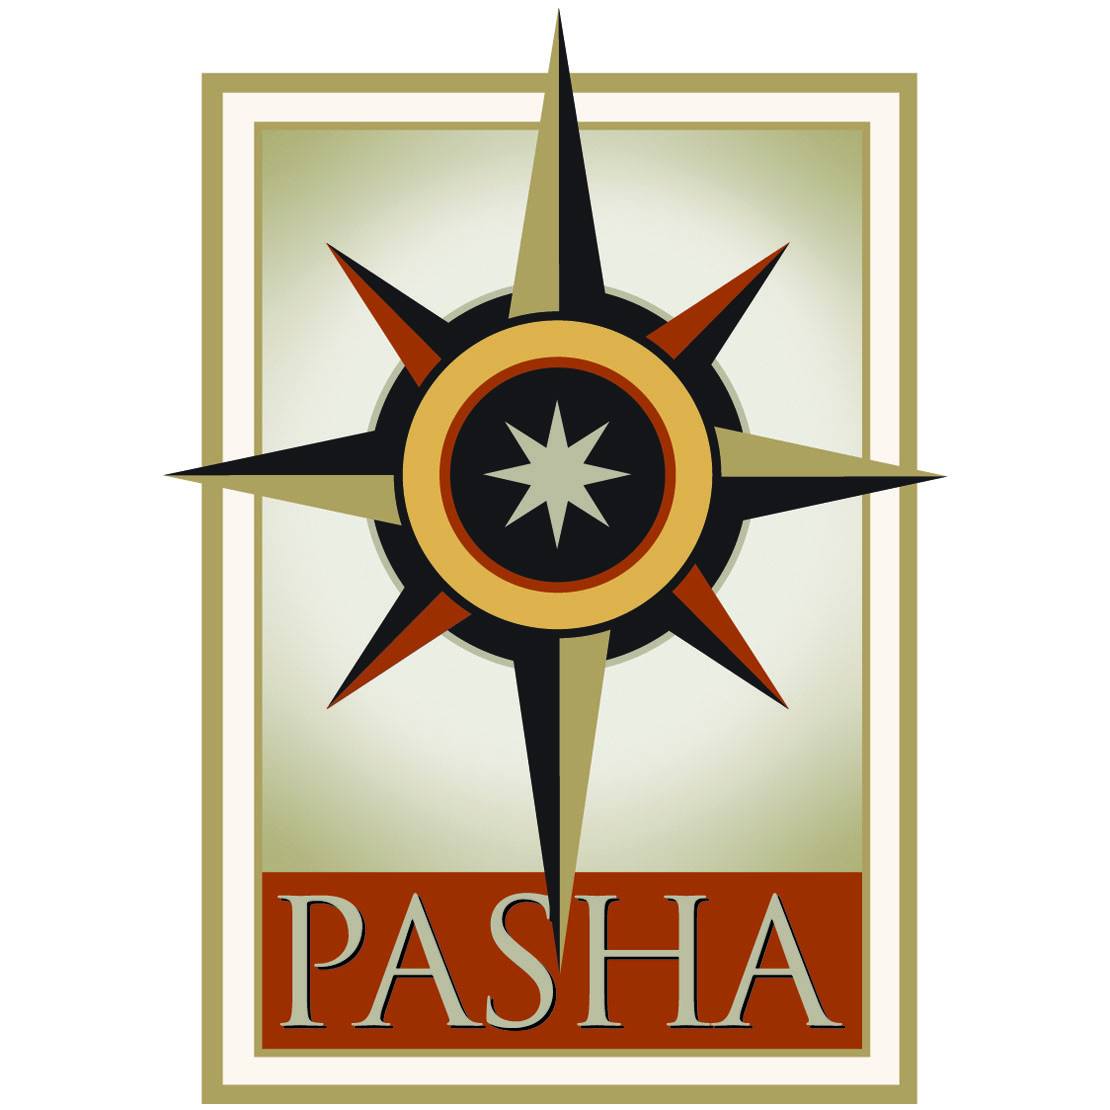 The Pasha Group logo